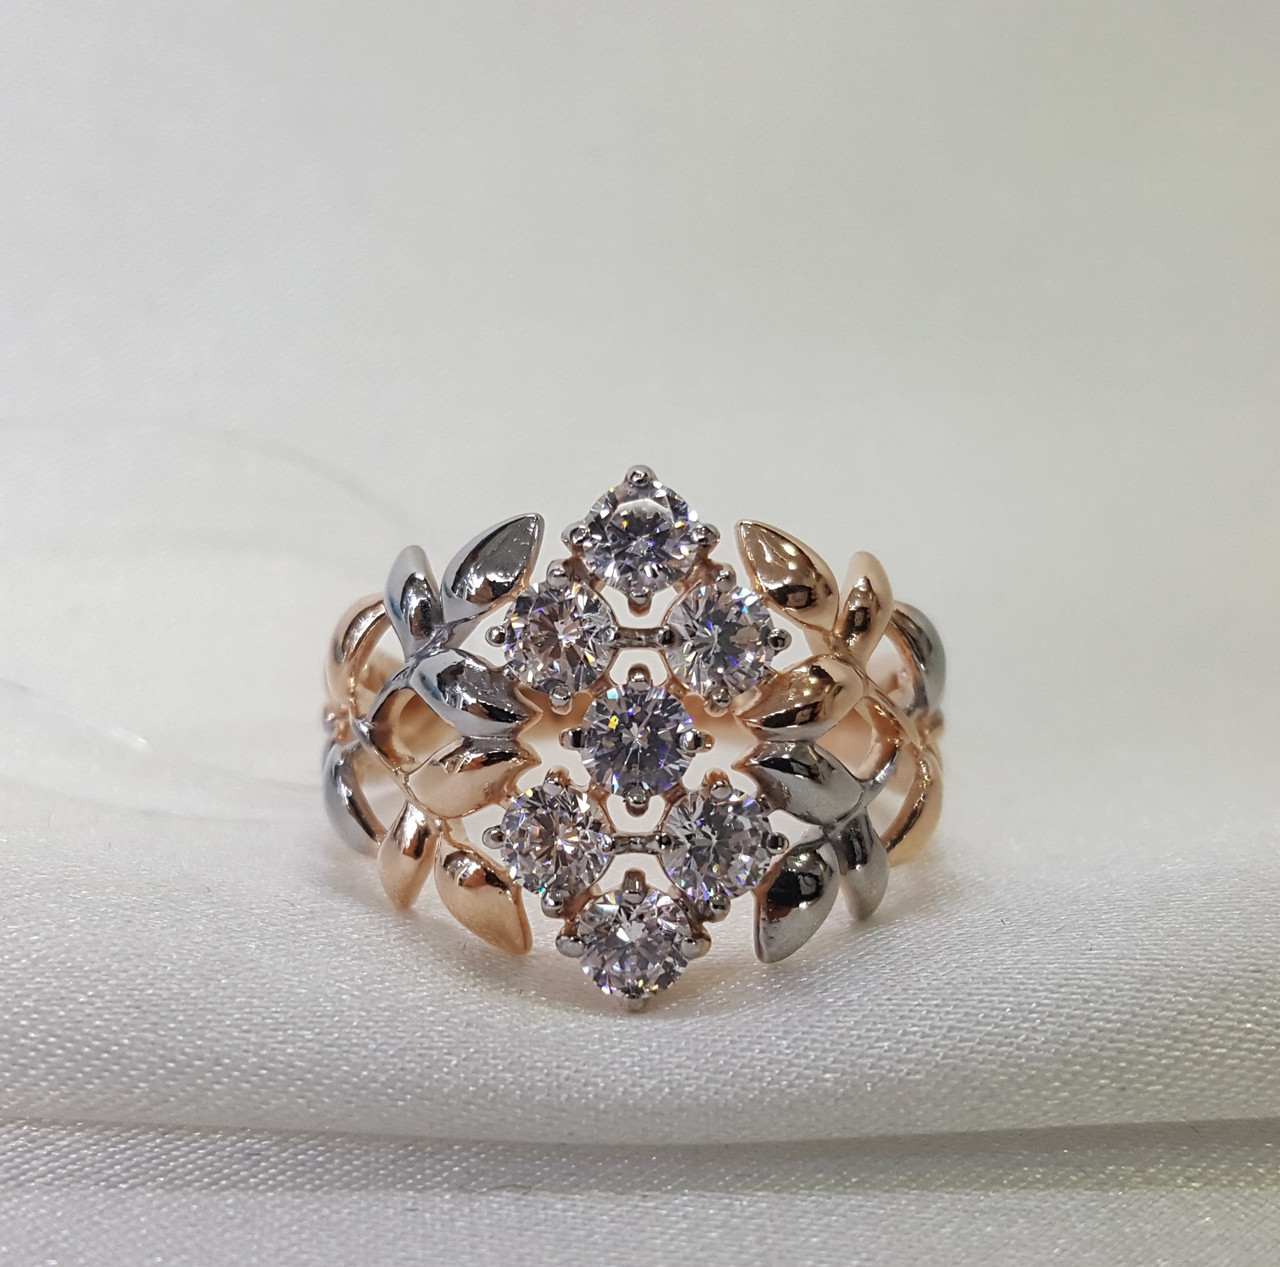 Позолоченное кольцо из серебра с фианитами SOKOLOV 93010592 позолота